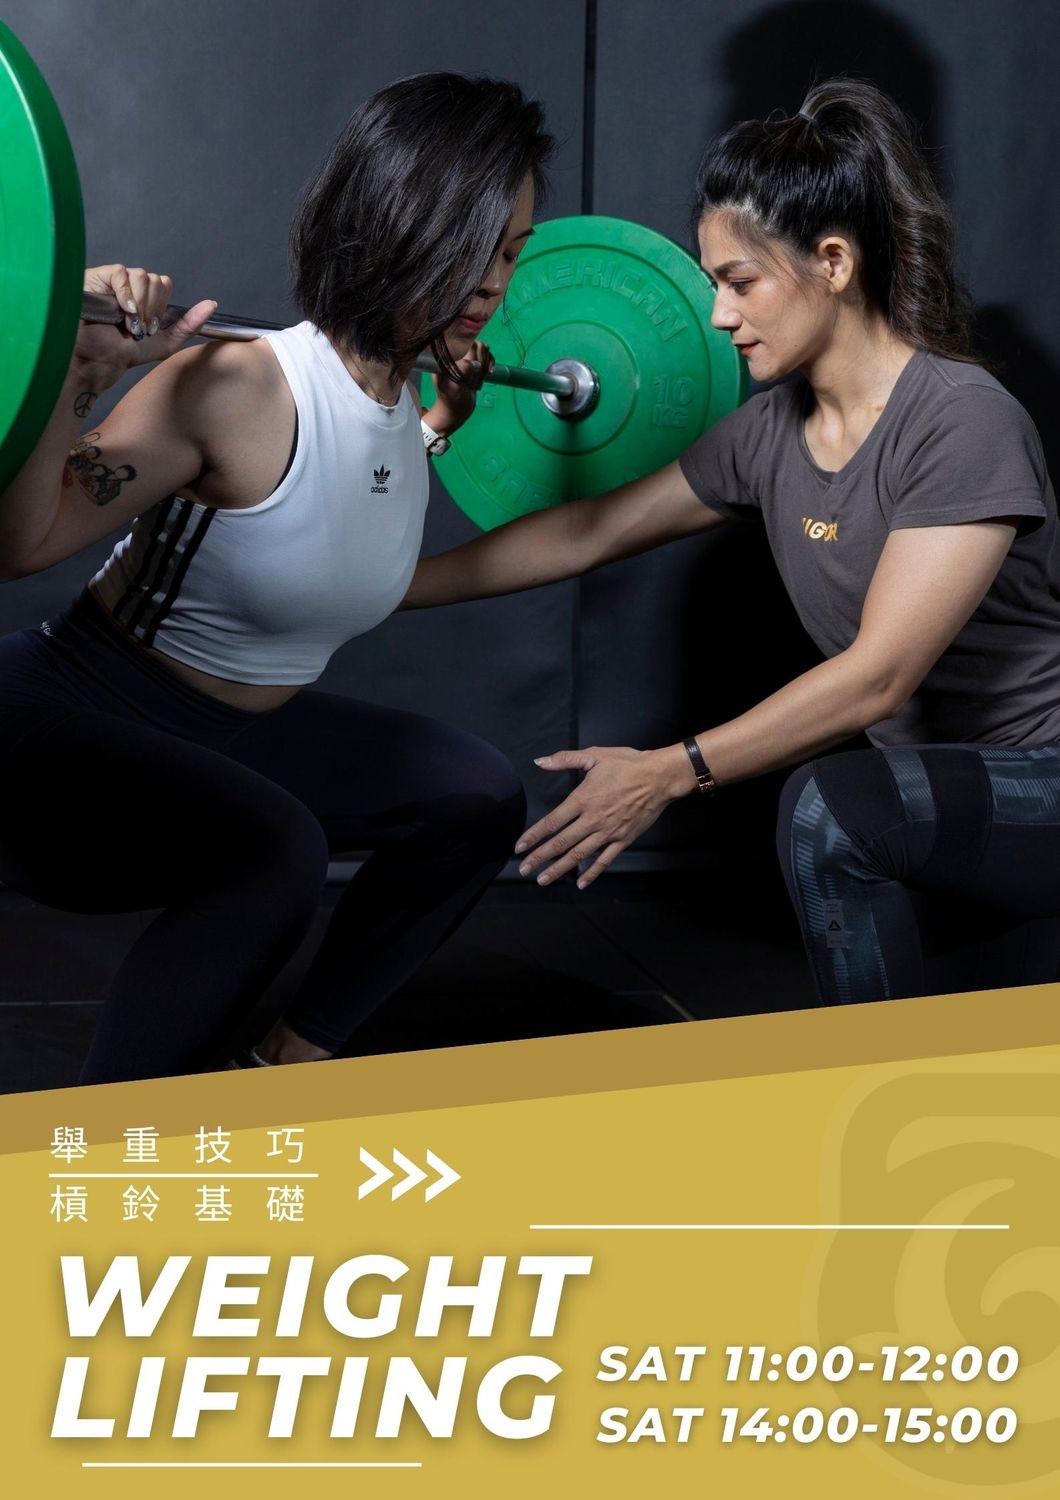 維格團體課程 - 維格健身運動空間 Vigor Fitness & Kettlebell Sport